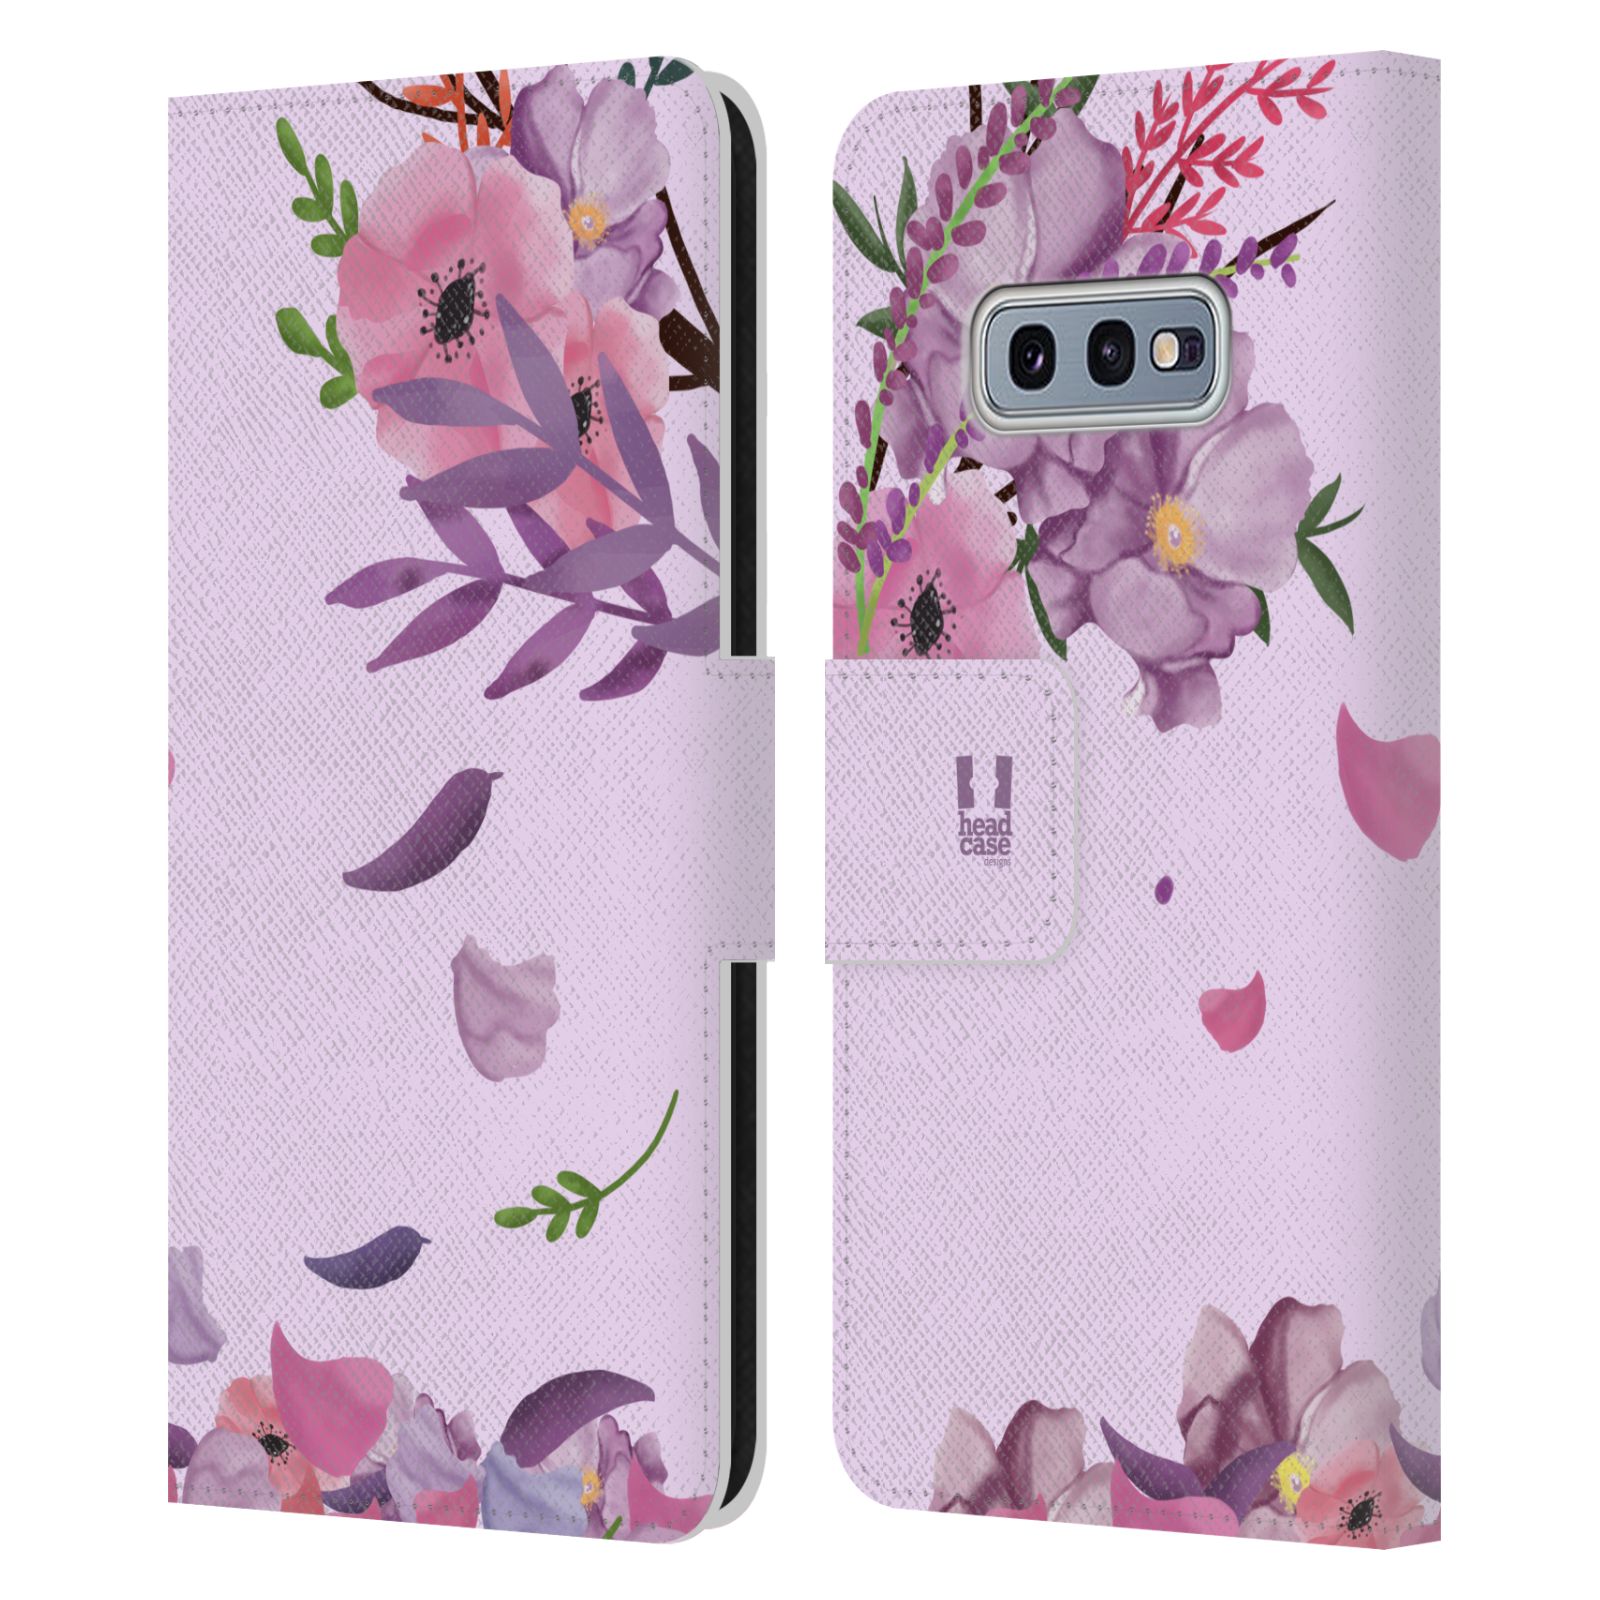 Pouzdro na mobil Samsung Galaxy S10e  - HEAD CASE - Rozkvetlé růže a listy růžová